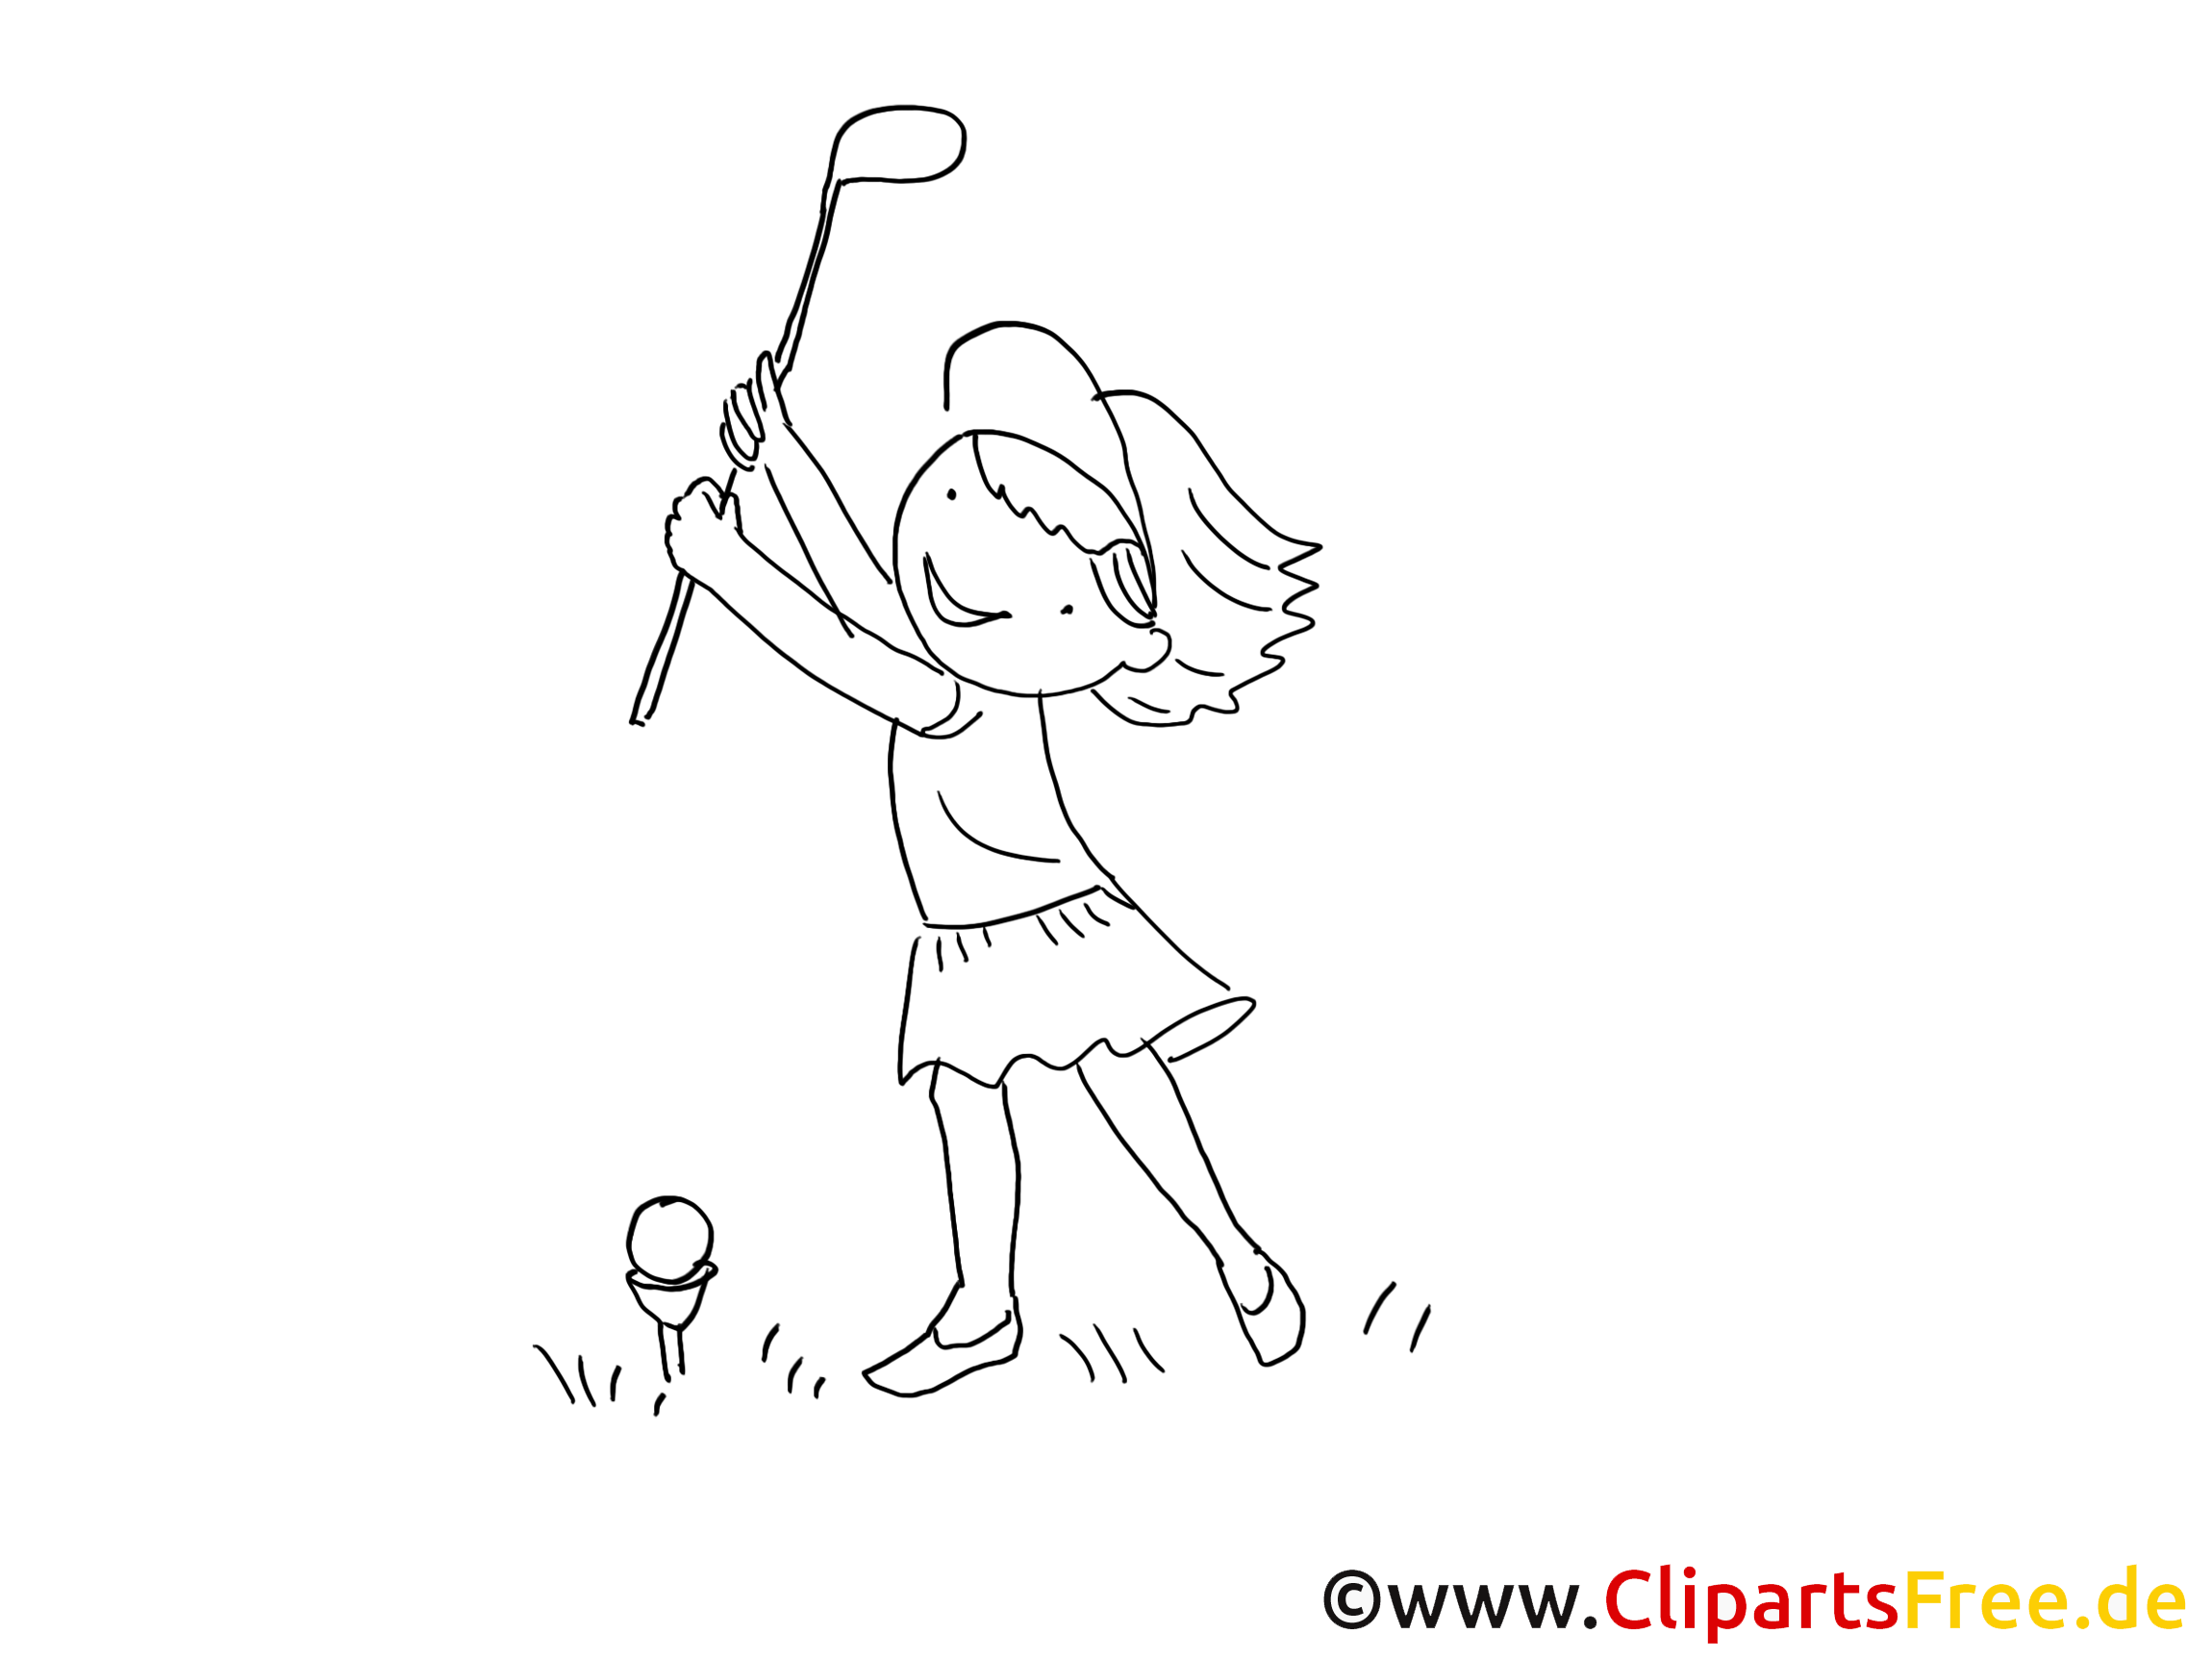 clipart gratuit golf - photo #18